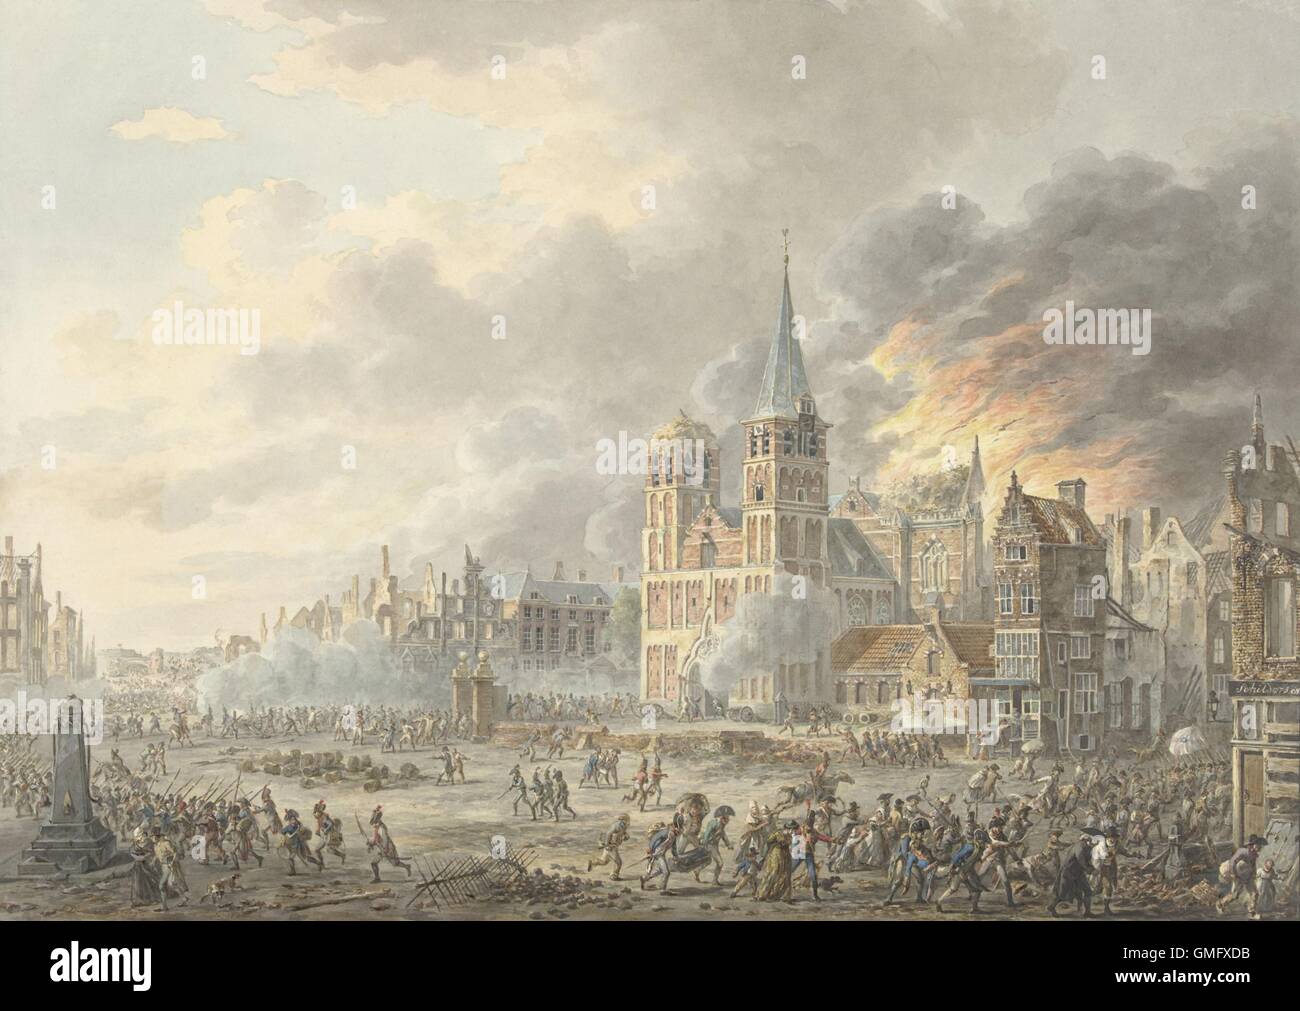 Capture d'une ville par les troupes françaises, par Dirk Lagendijk, 1801, la peinture hollandaise, aquarelle sur papier. De 1795 à 1813, Arnhem a été occupée par les français durant les guerres napoléoniennes (BSLOC 2016 2 209) Banque D'Images